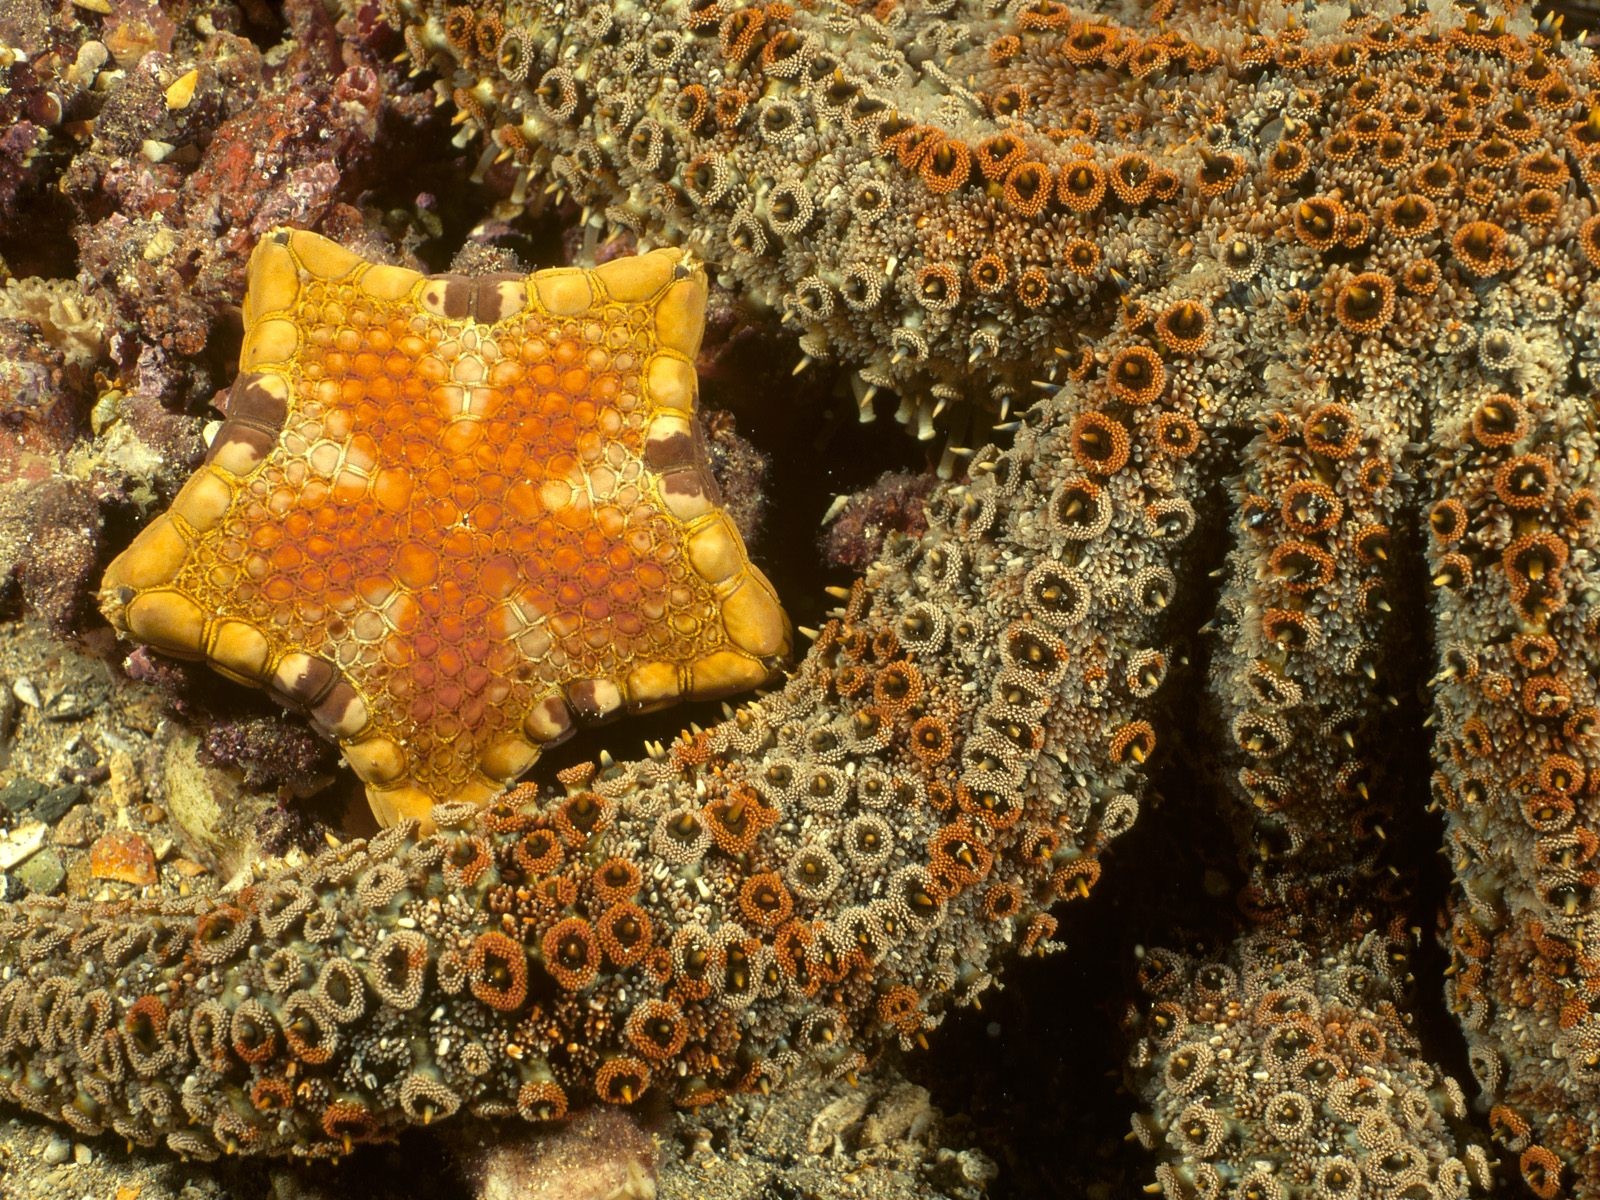 General 1600x1200 underwater sea starfish nature